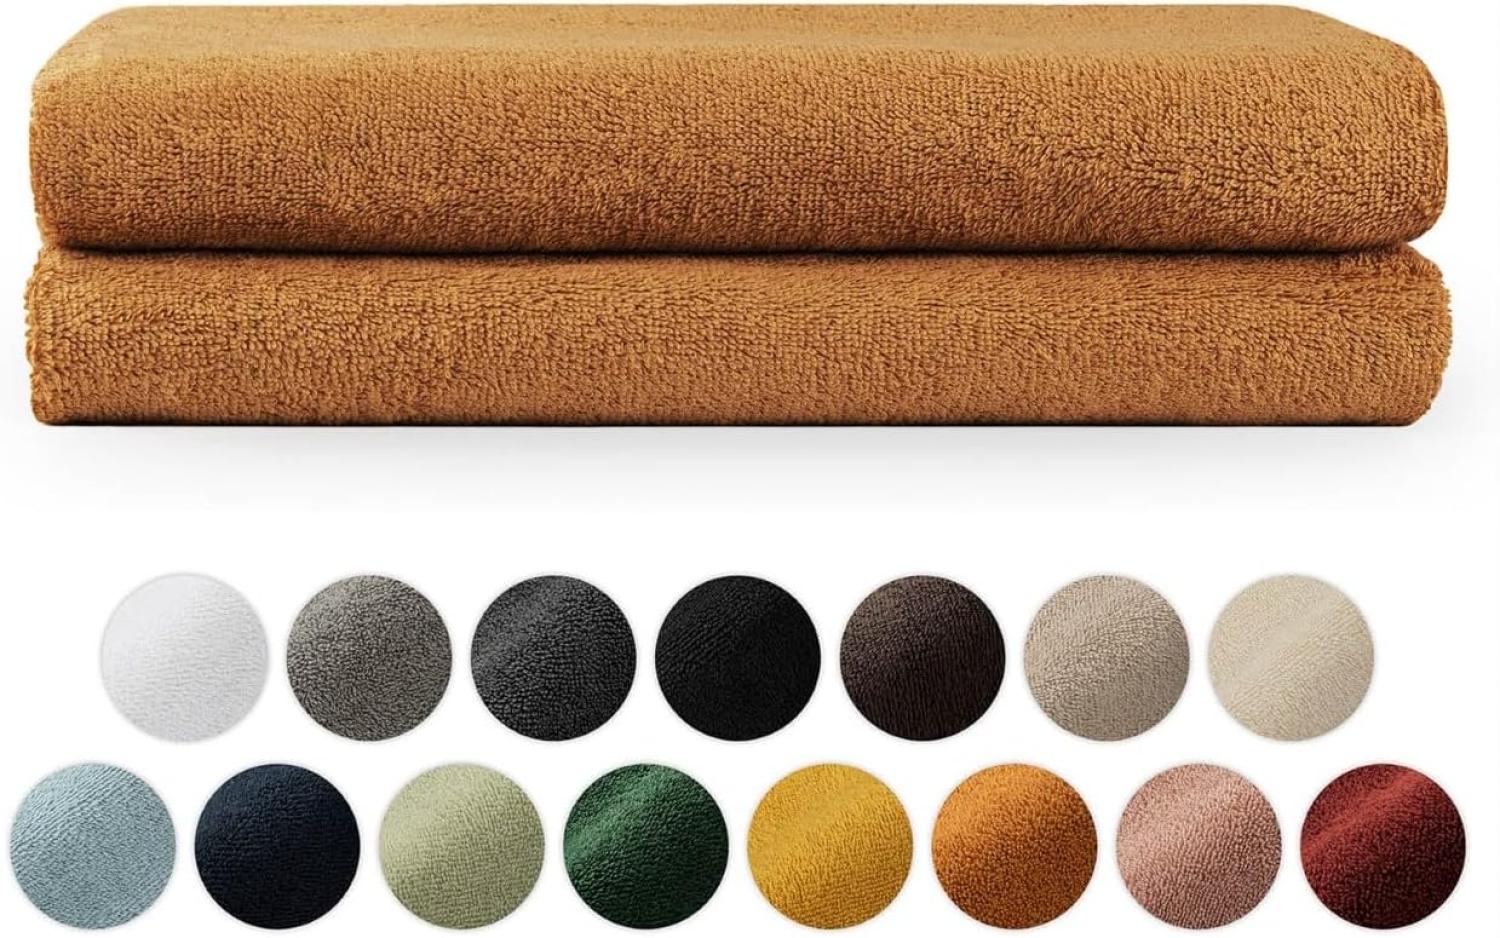 Blumtal Premium Frottier Handtücher Set mit Aufhängschlaufen - Baumwolle Oeko-TEX Zertifiziert, weich, saugstark - 2X Badetuch (70x140 cm), Pumpkin Spice (Braun) Bild 1